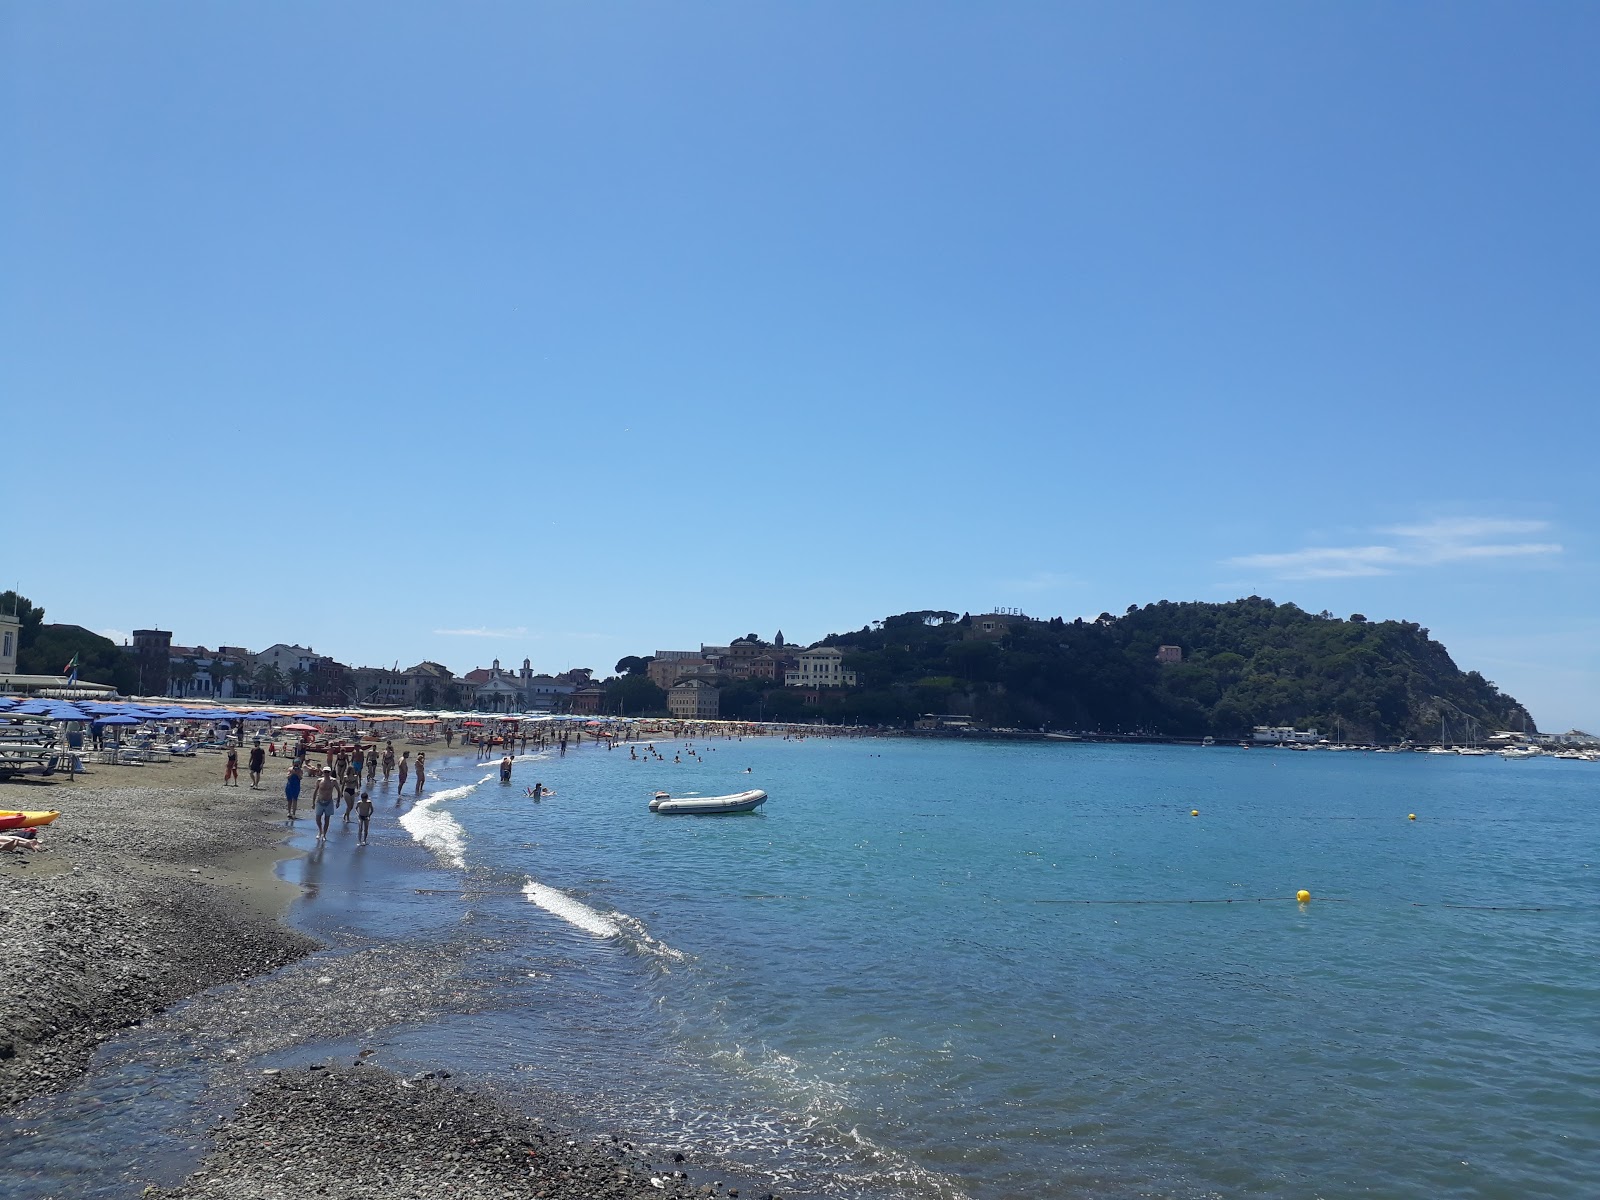 Spiaggia per cani'in fotoğrafı - rahatlamayı sevenler arasında popüler bir yer